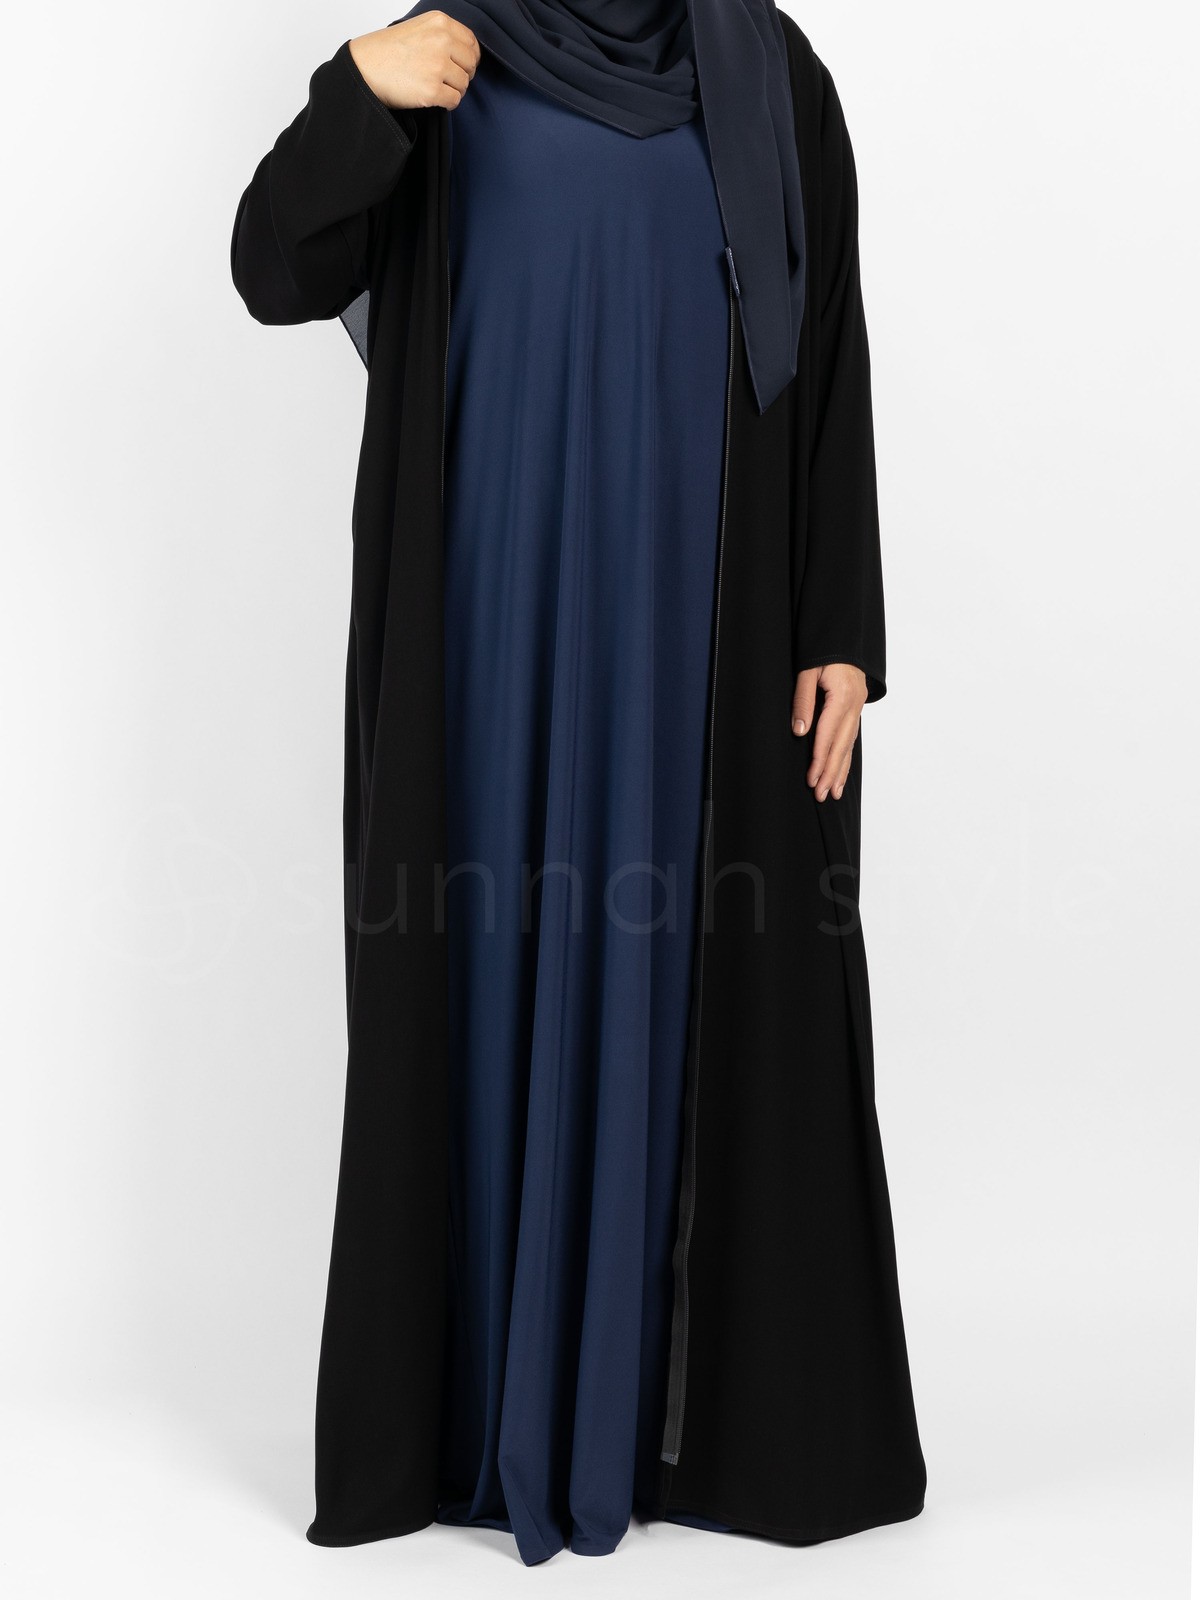 Sunnah Style - Sleeveless Jersey Abaya (Navy Blue)